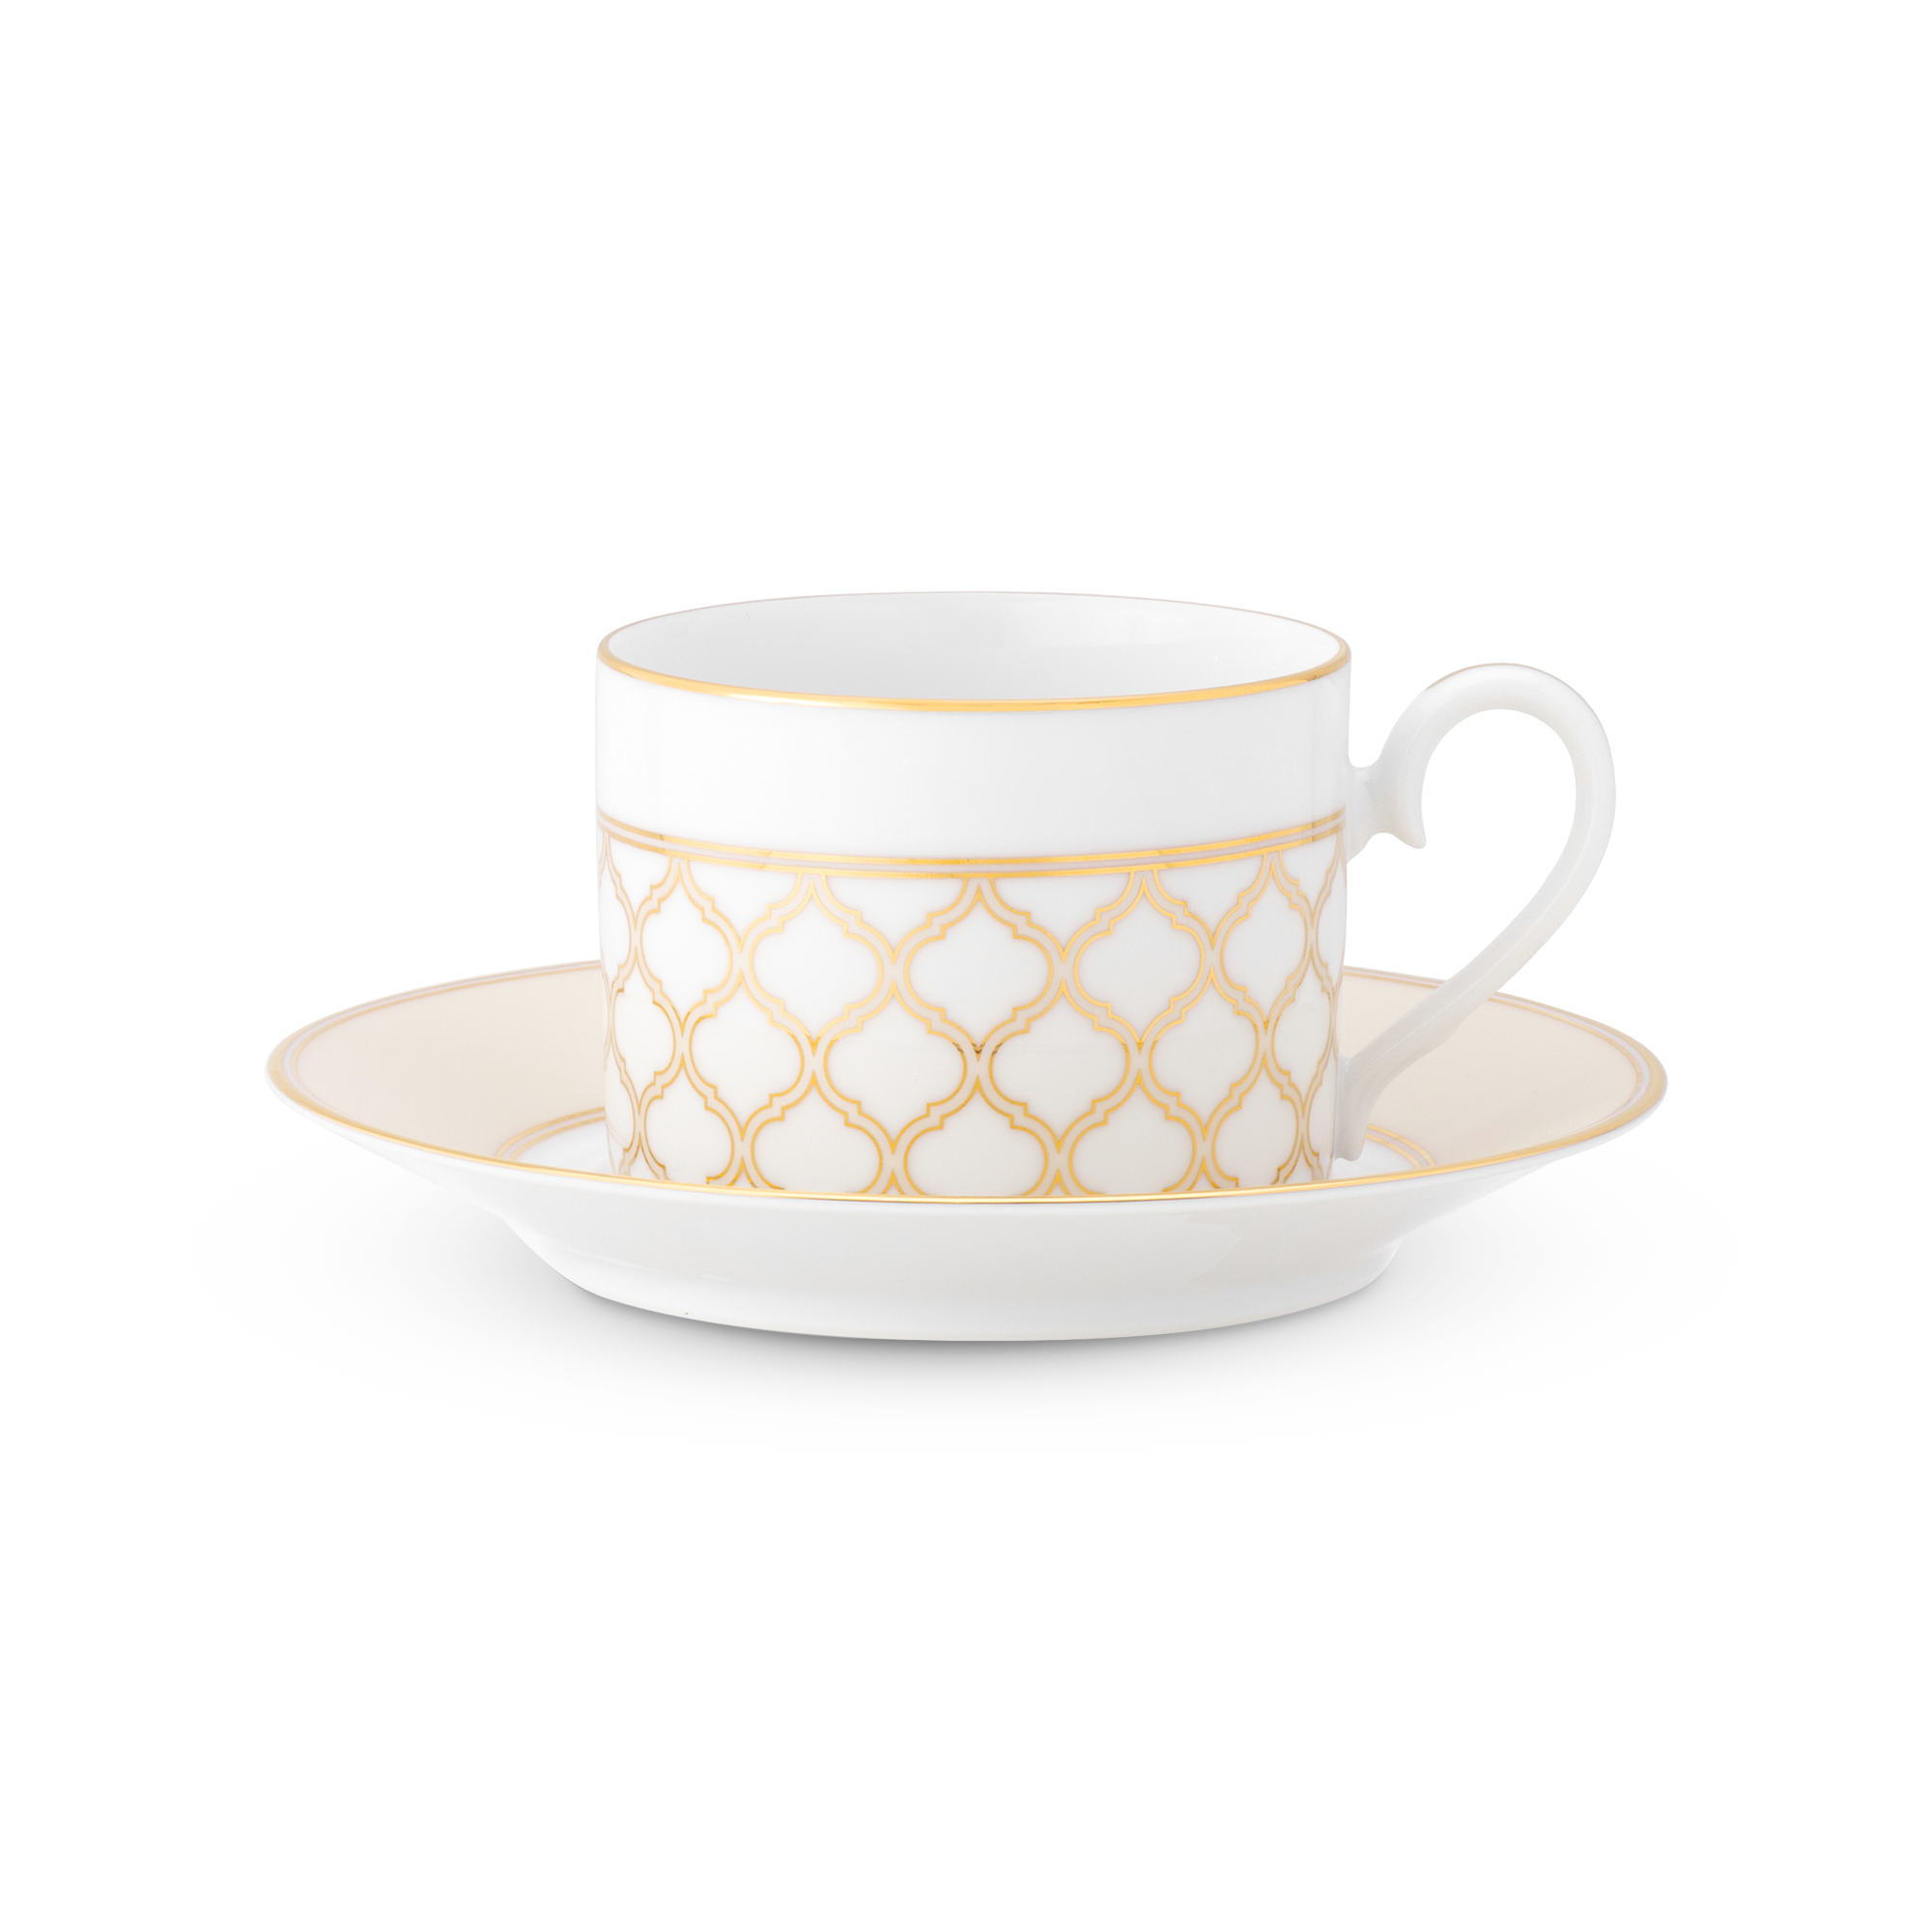  Chén trà (tách trà) kèm đĩa lót dung tích 250ml sứ trắng | Eternal Palace Gold 1728L-T91089 